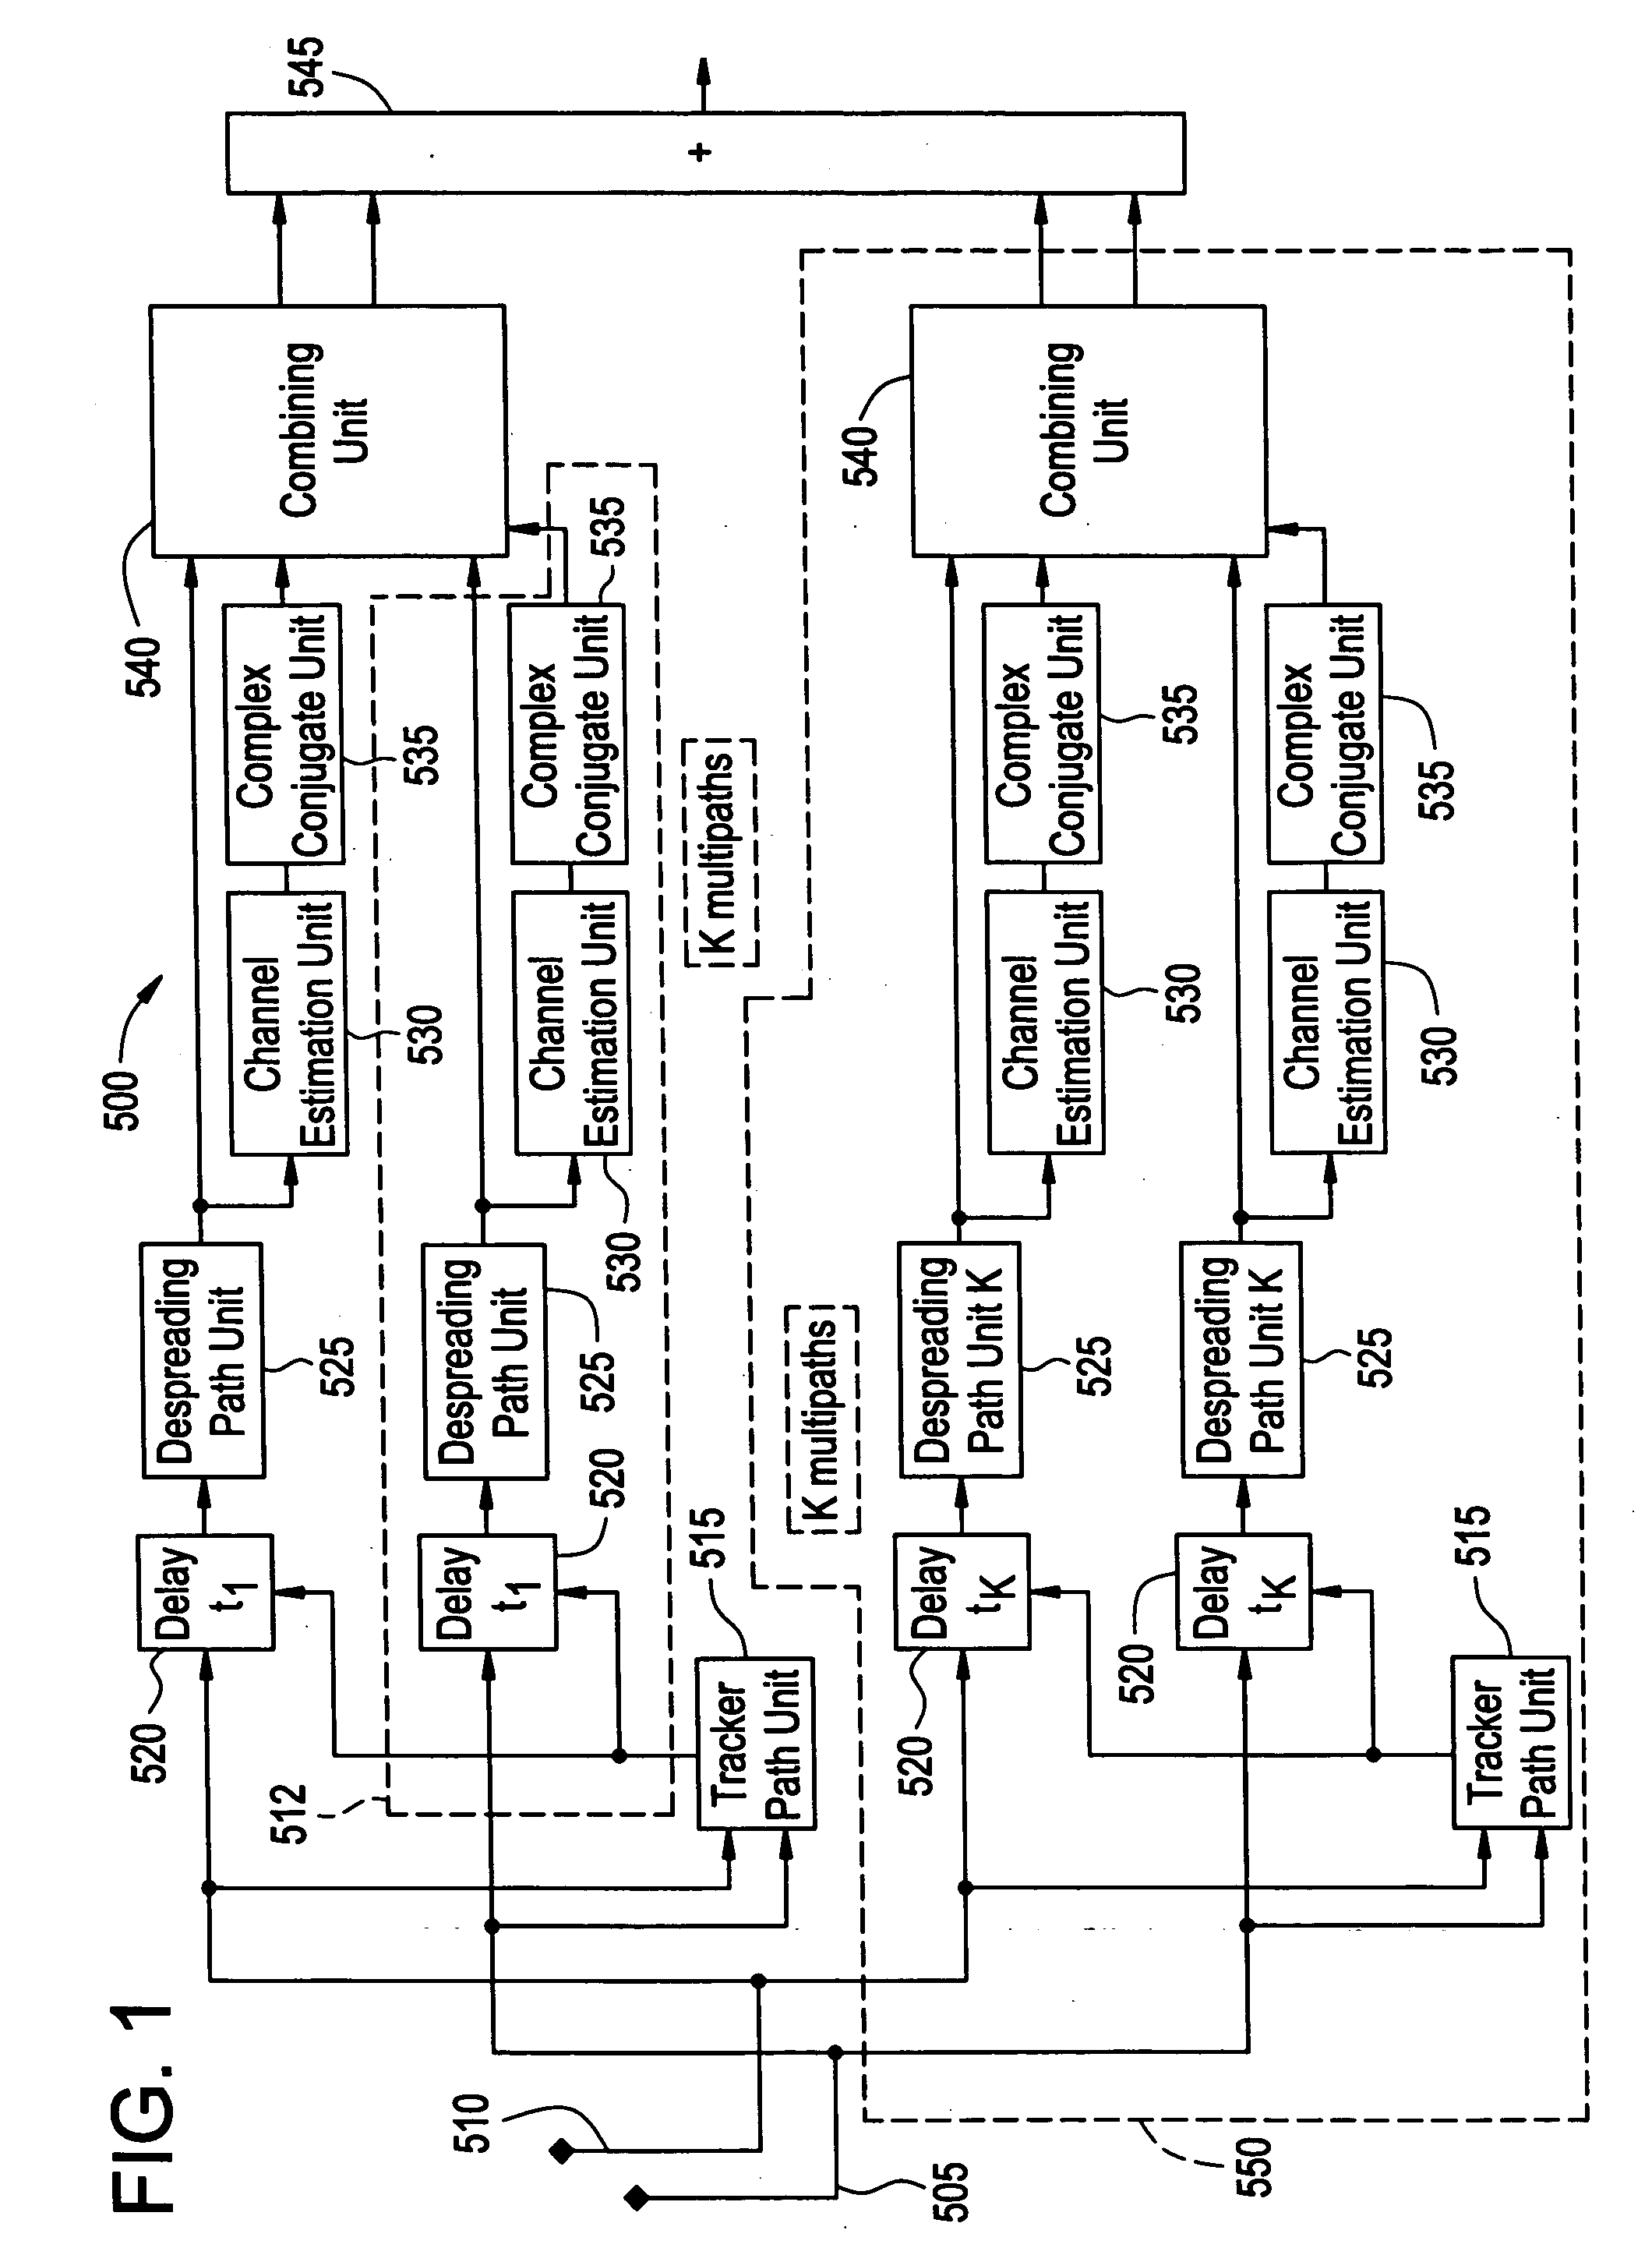 Method of processing multi-path signals